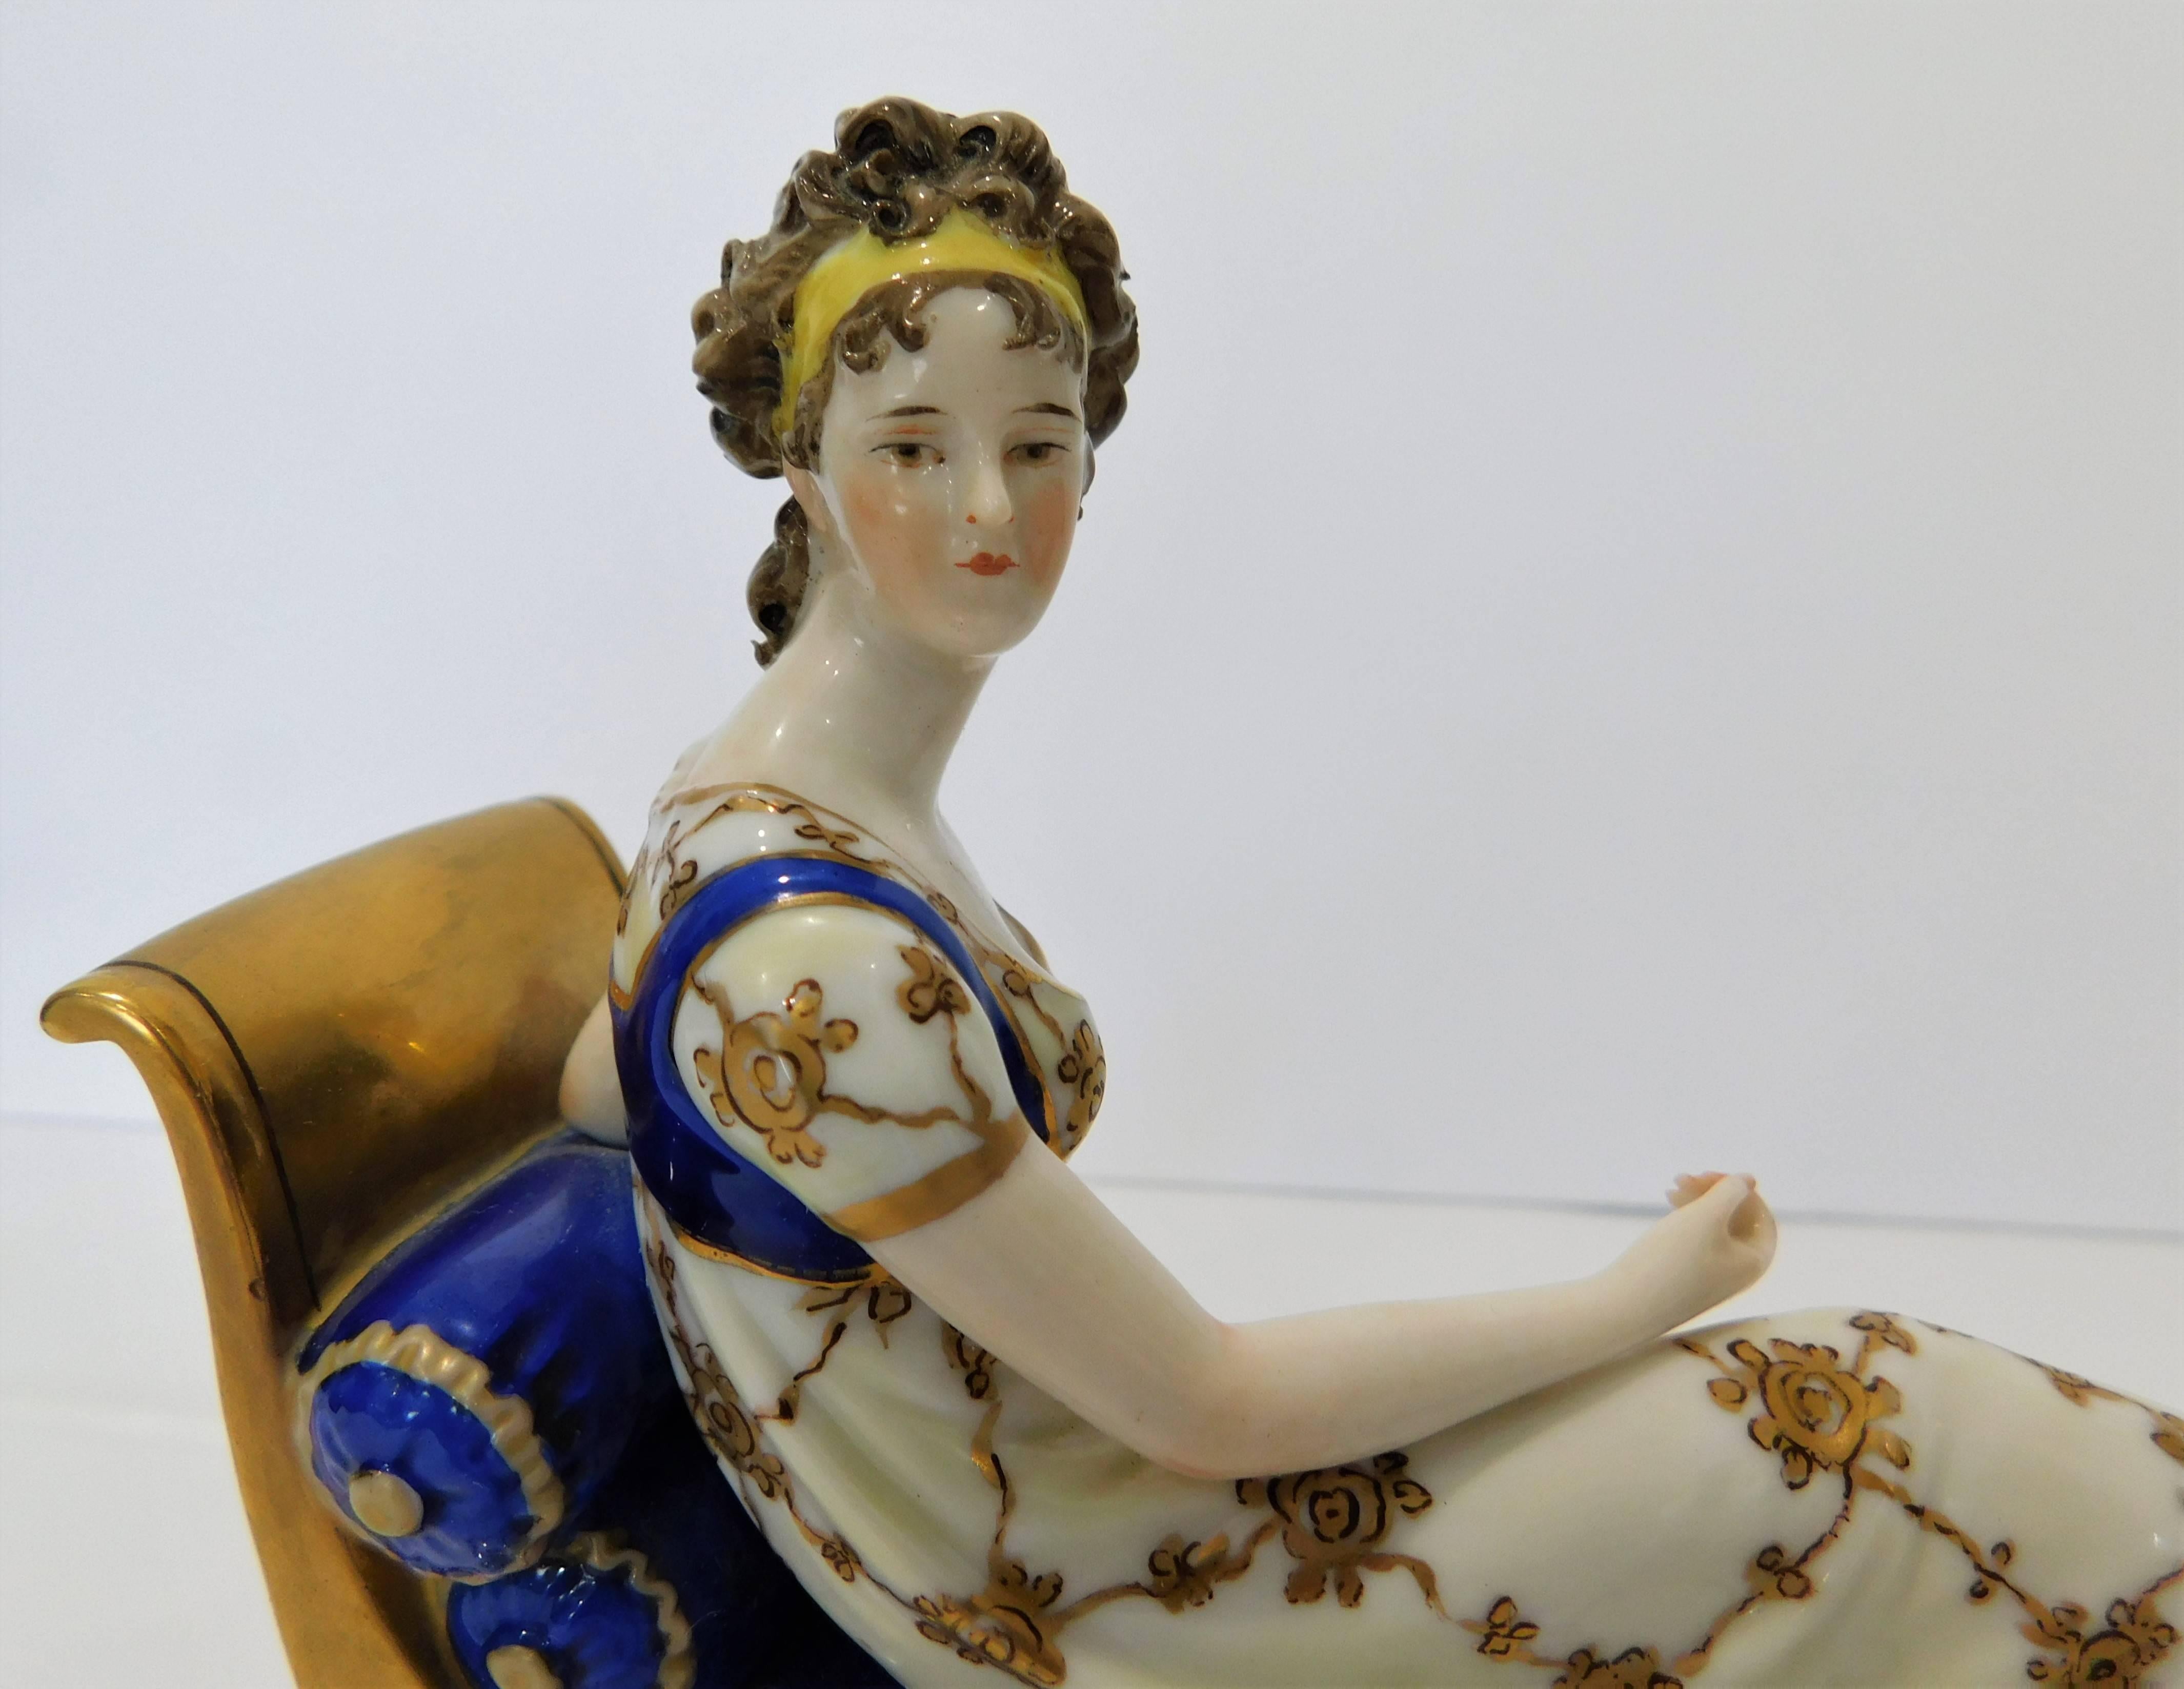 scheibe alsbach porcelain figurines